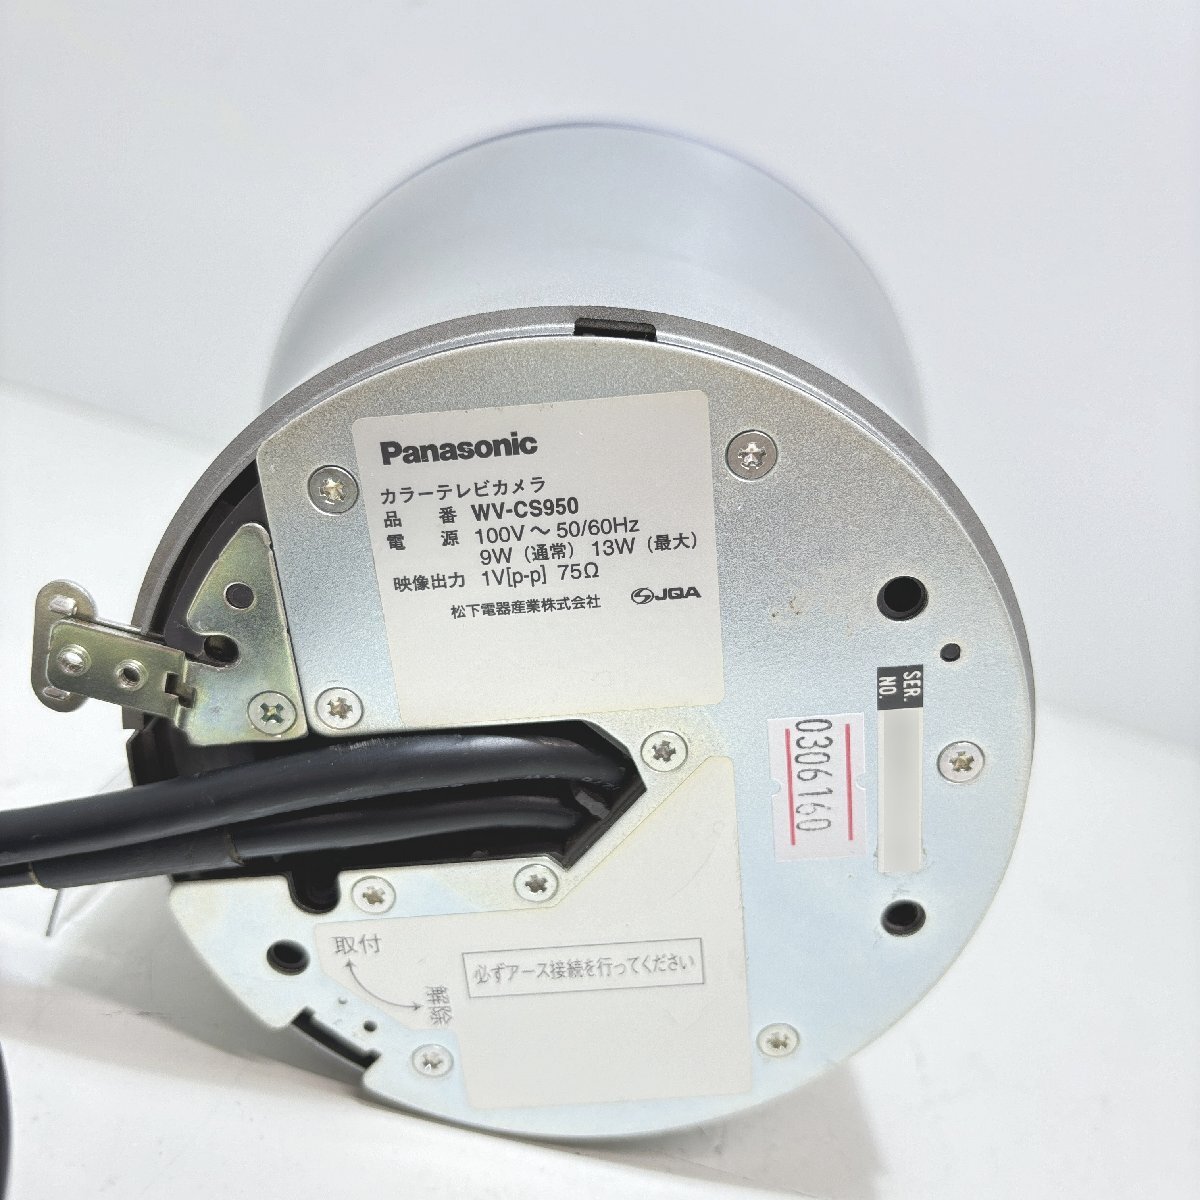 Panasonic ドーム型 コンビネーション カラーカメラ WV-CS950 パナソニック 防犯カメラ 0306160の画像6